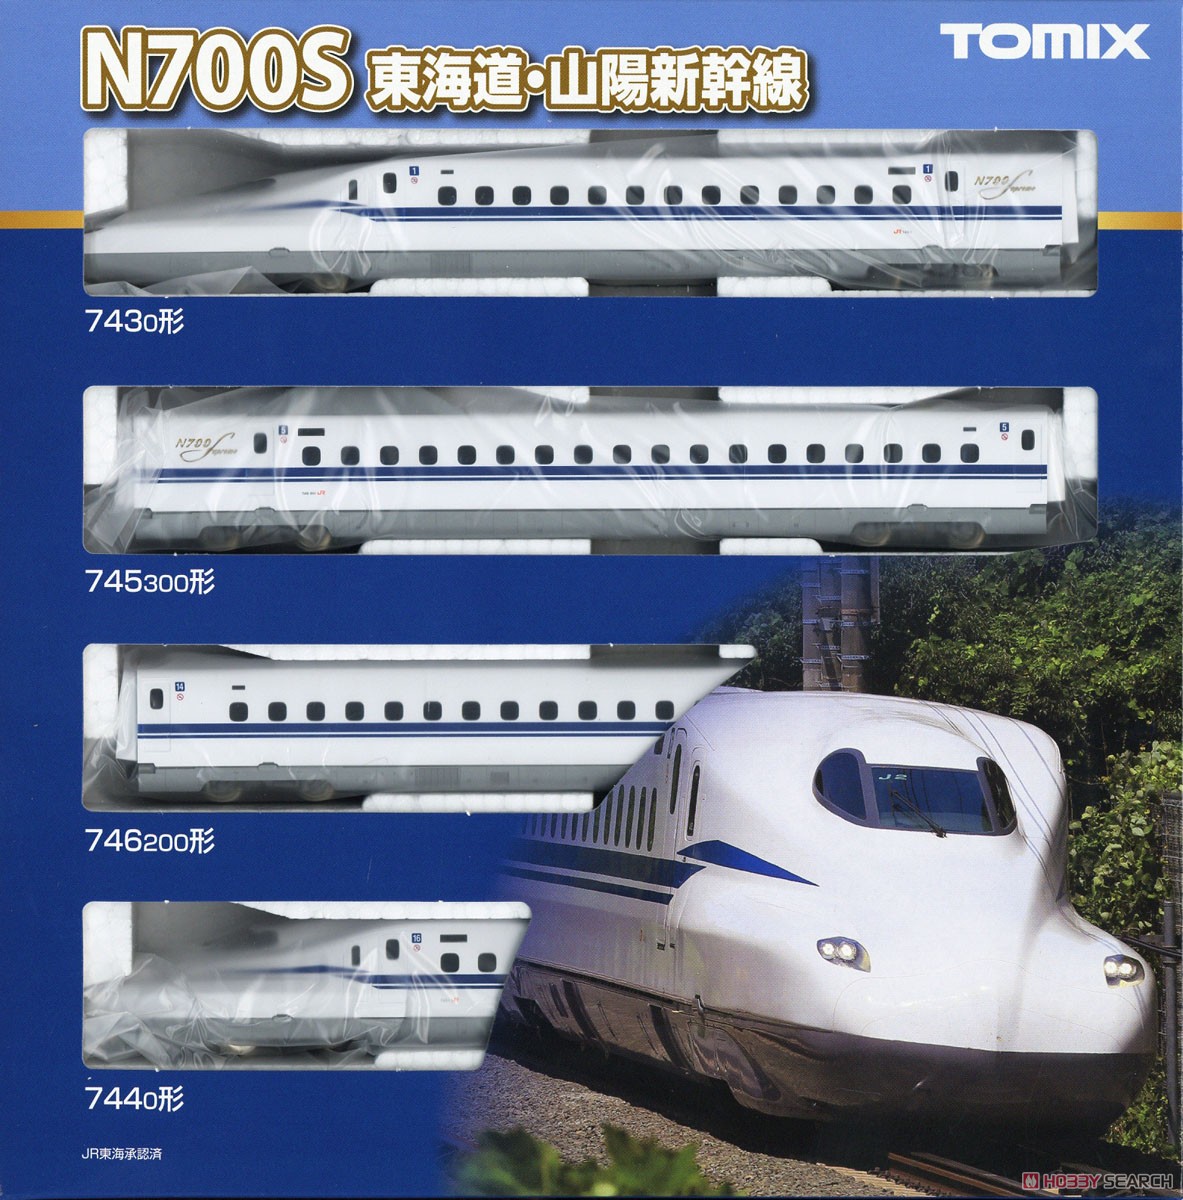 JR N700系 (N700S) 東海道・山陽新幹線 基本セット (基本・4両セット) (鉄道模型) パッケージ1